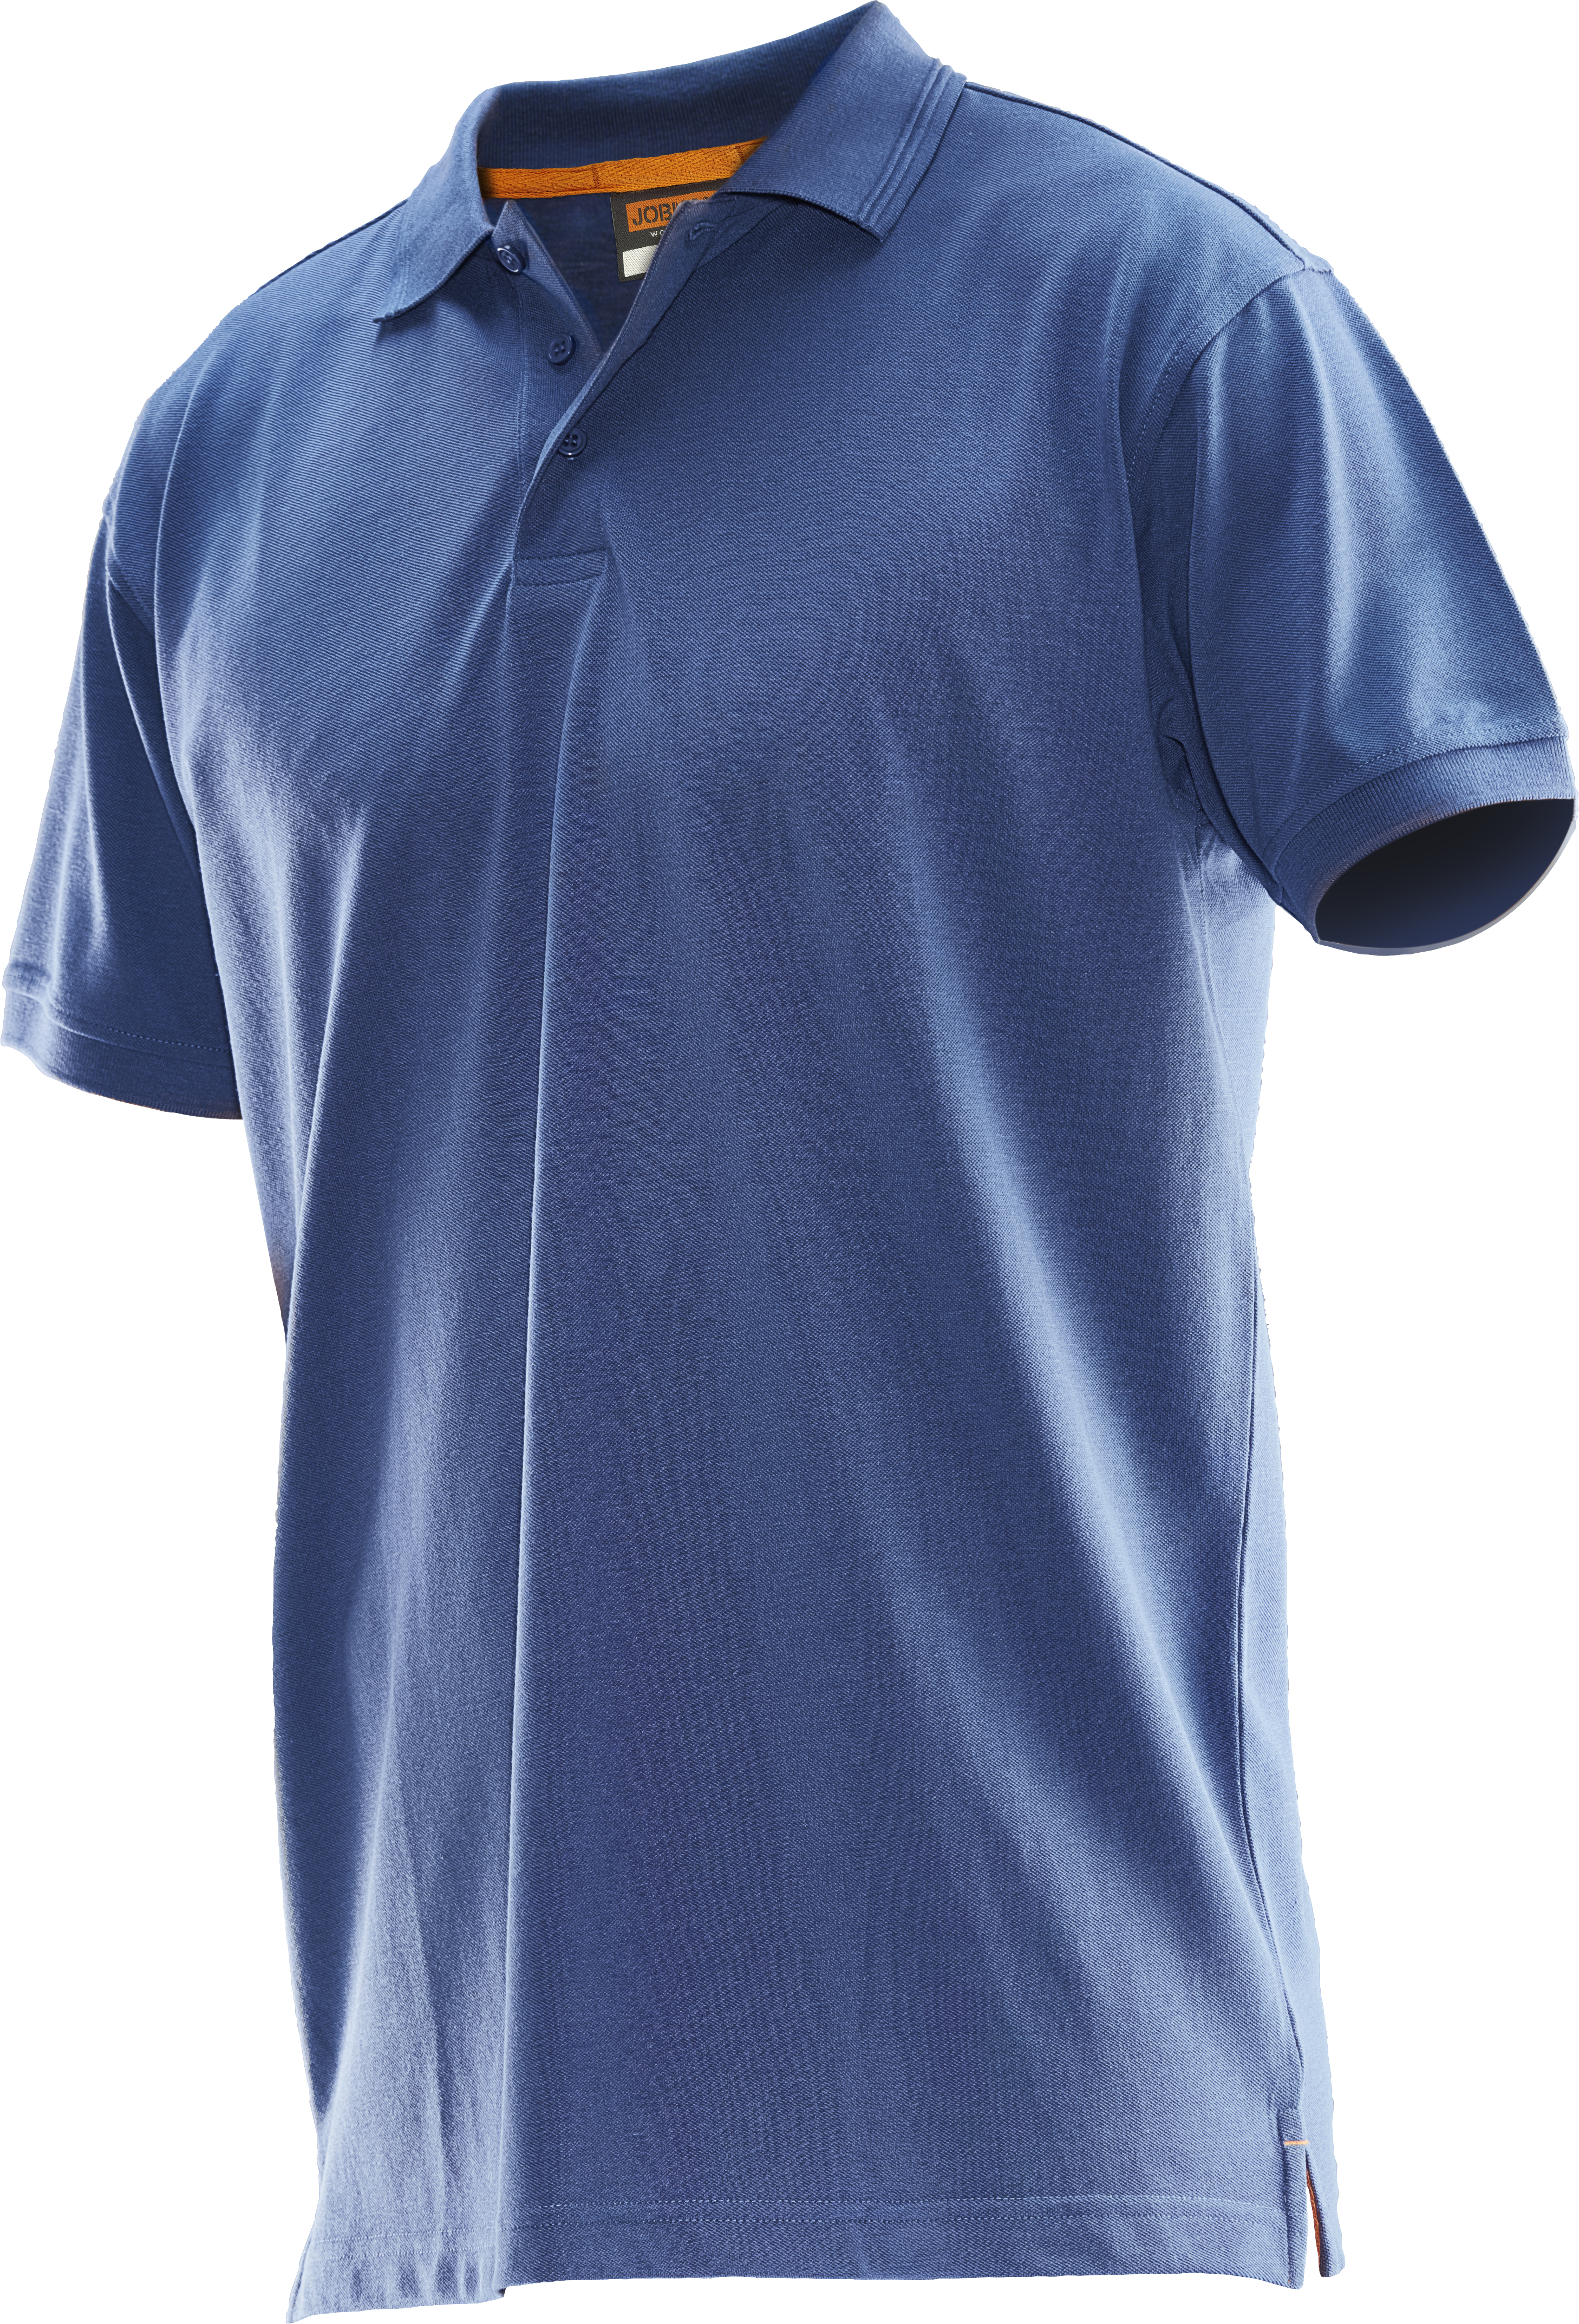 5564 T-shirt polo XS bleu ciel